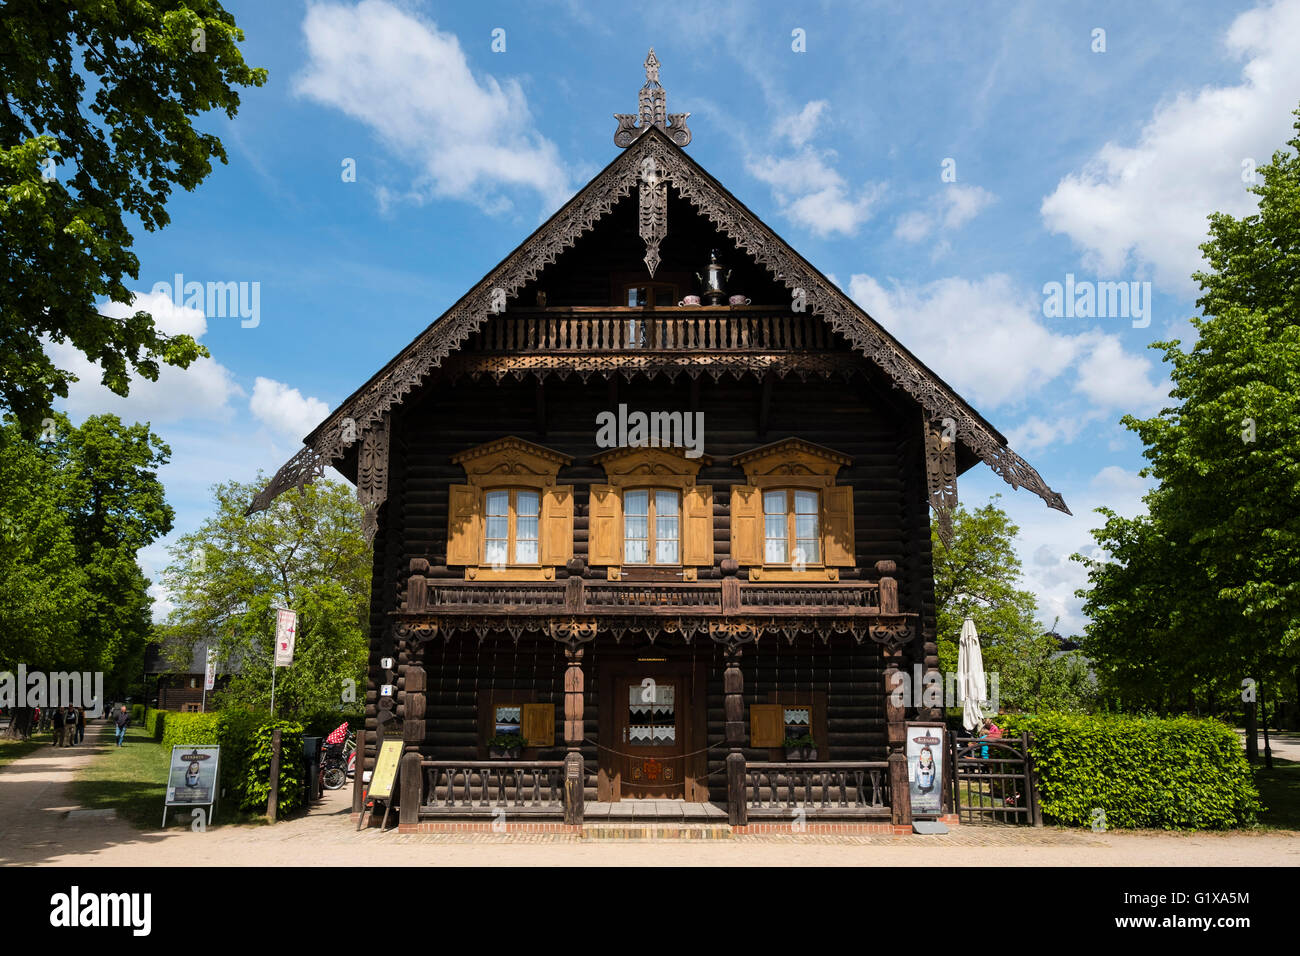 Holzhaus auf dem Display an Russischen Kolonie (Russische Kolonie) Alexandrowka, Potsdam, Brandenburg, Deutschland Stockfoto